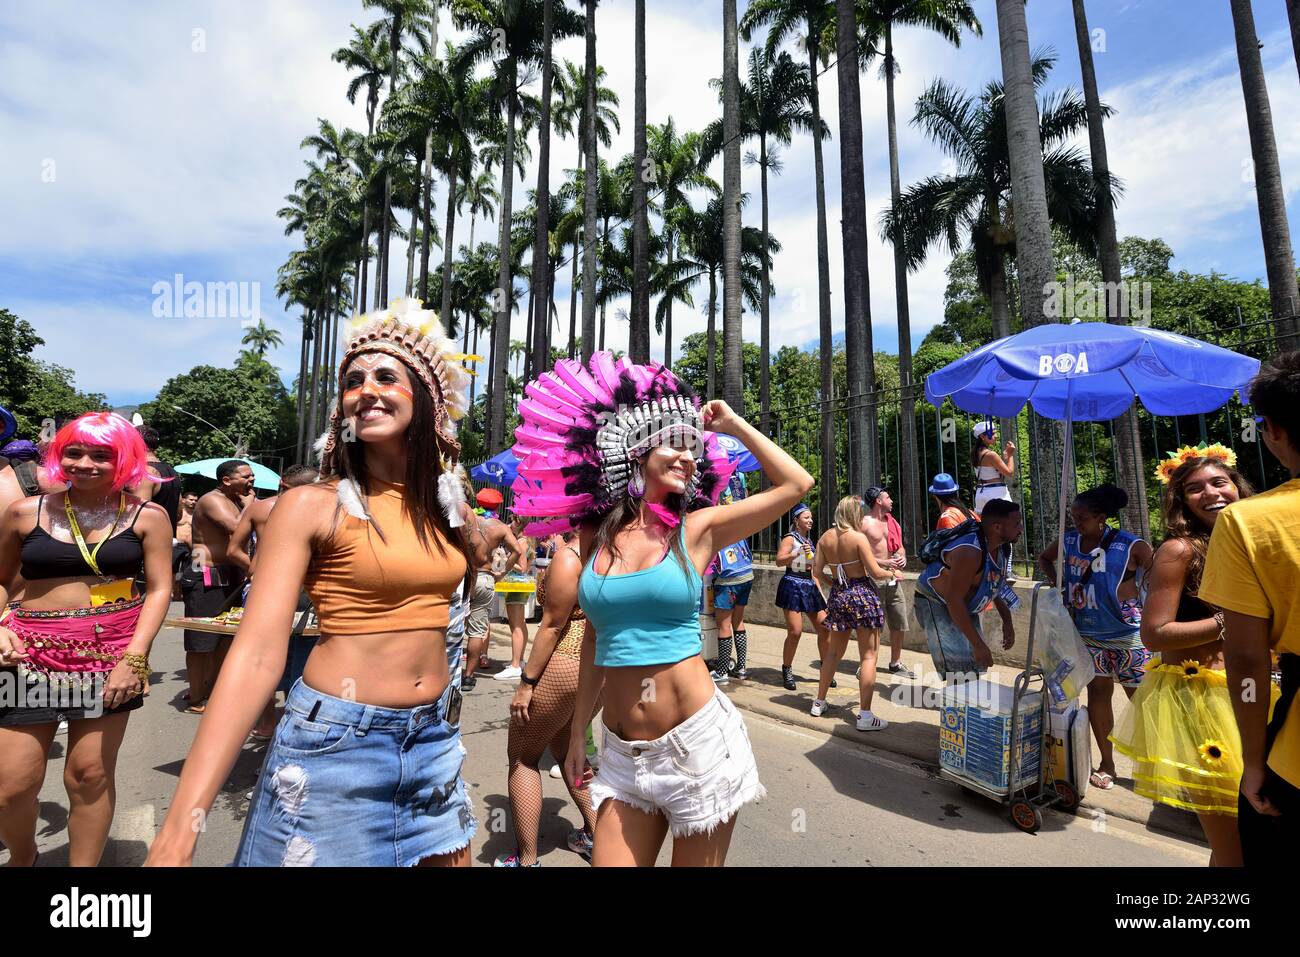 Street Carnival, America, Brasile - 5 marzo 2019: Giovani donne vestite di garb indigeno godono le feste di strada del Carnevale a Rio de Janeiro. Foto Stock